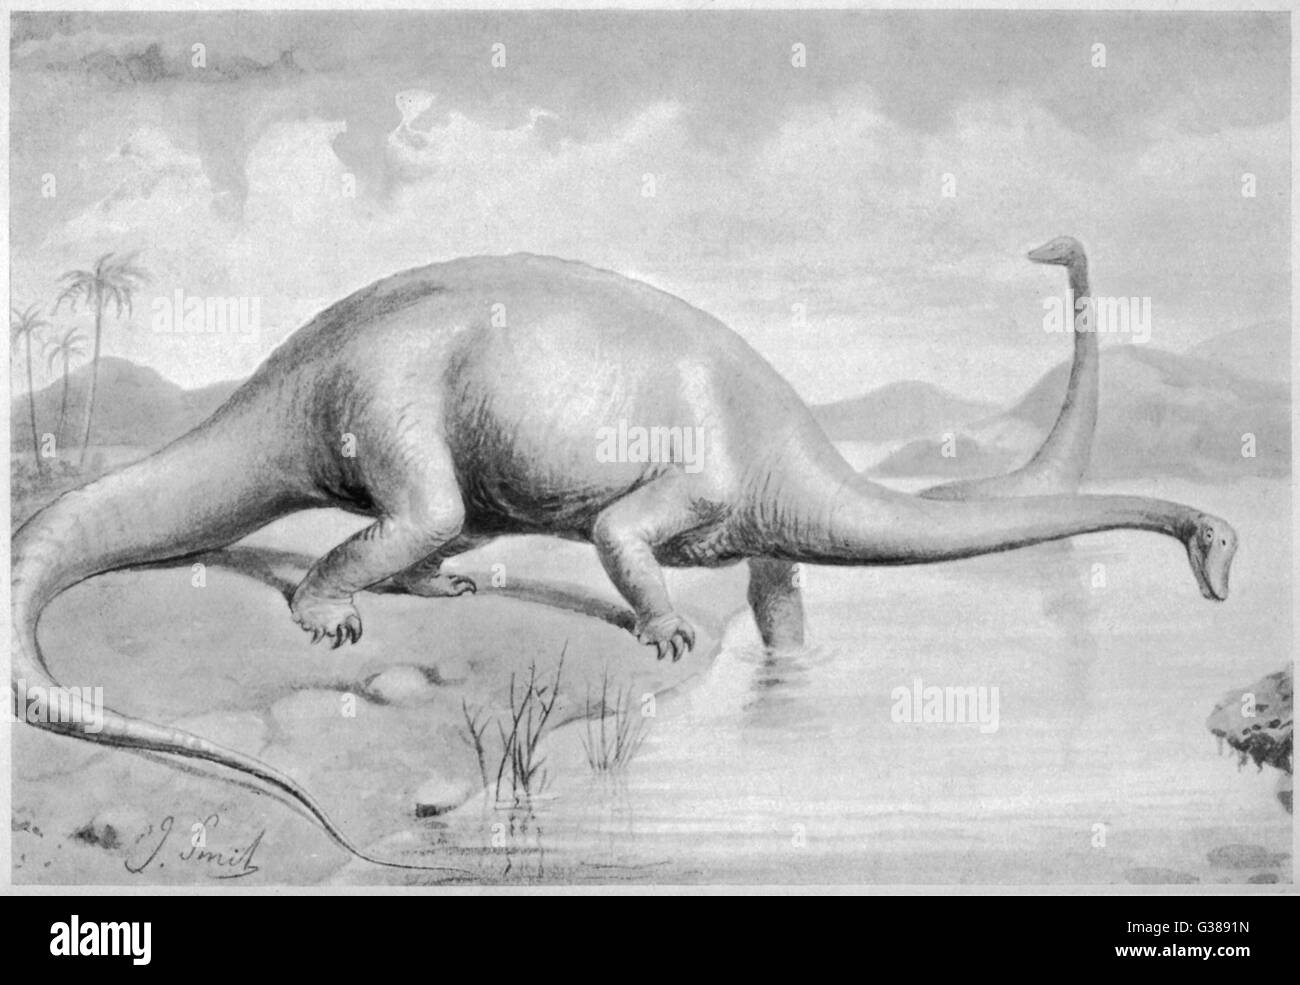 DIPLODOCUS CARNEGII che a 28 metri di lunghezza era il più grande dinosauro noto Foto Stock